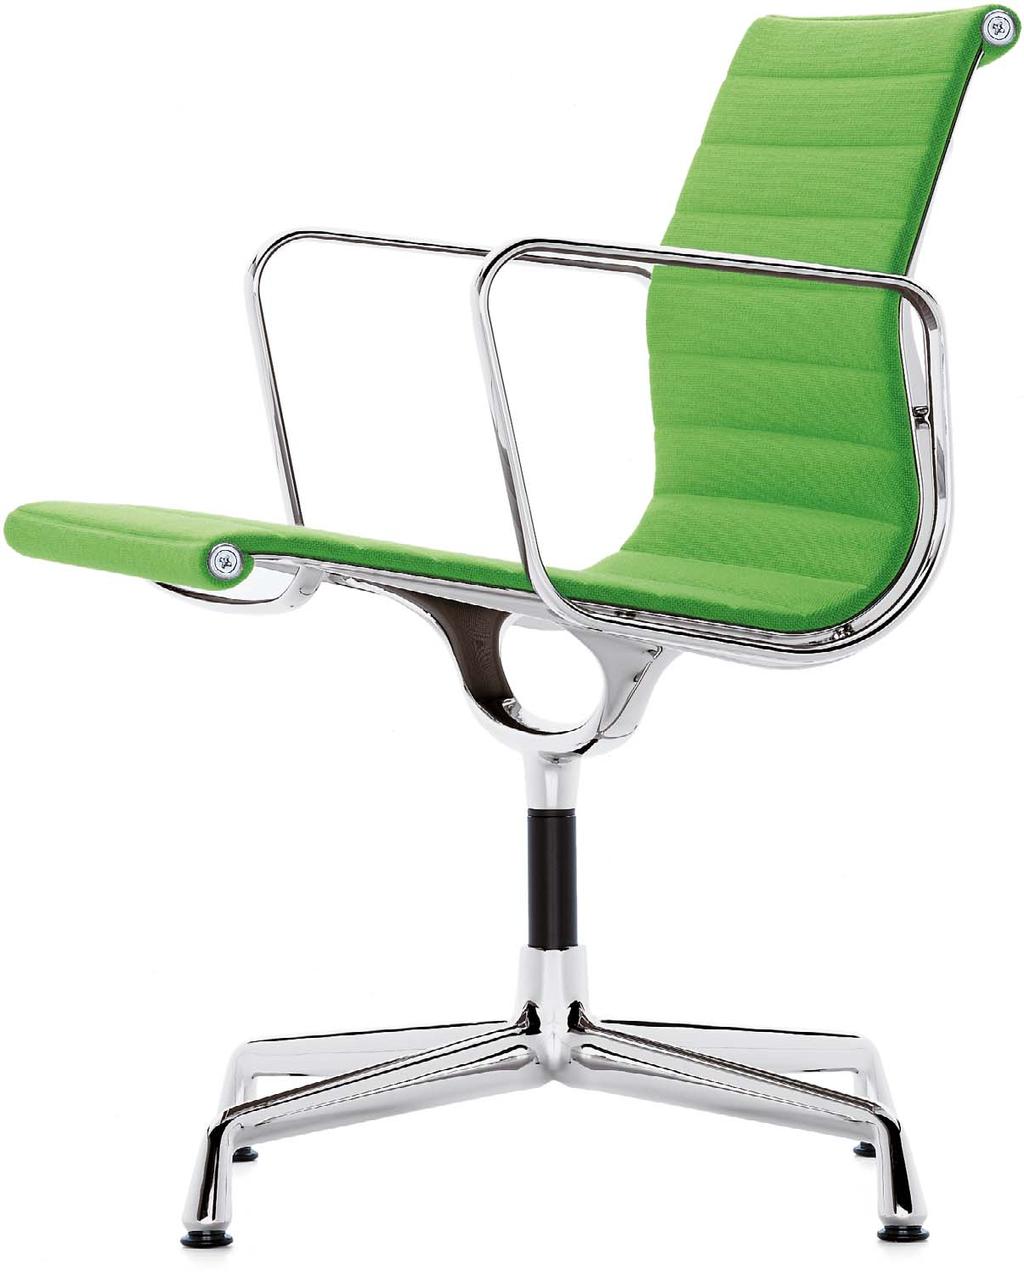 Charles & Ray Eames zählen zu den bedeutendsten Persönlichkeiten des Designs im 20. Jahrhundert.